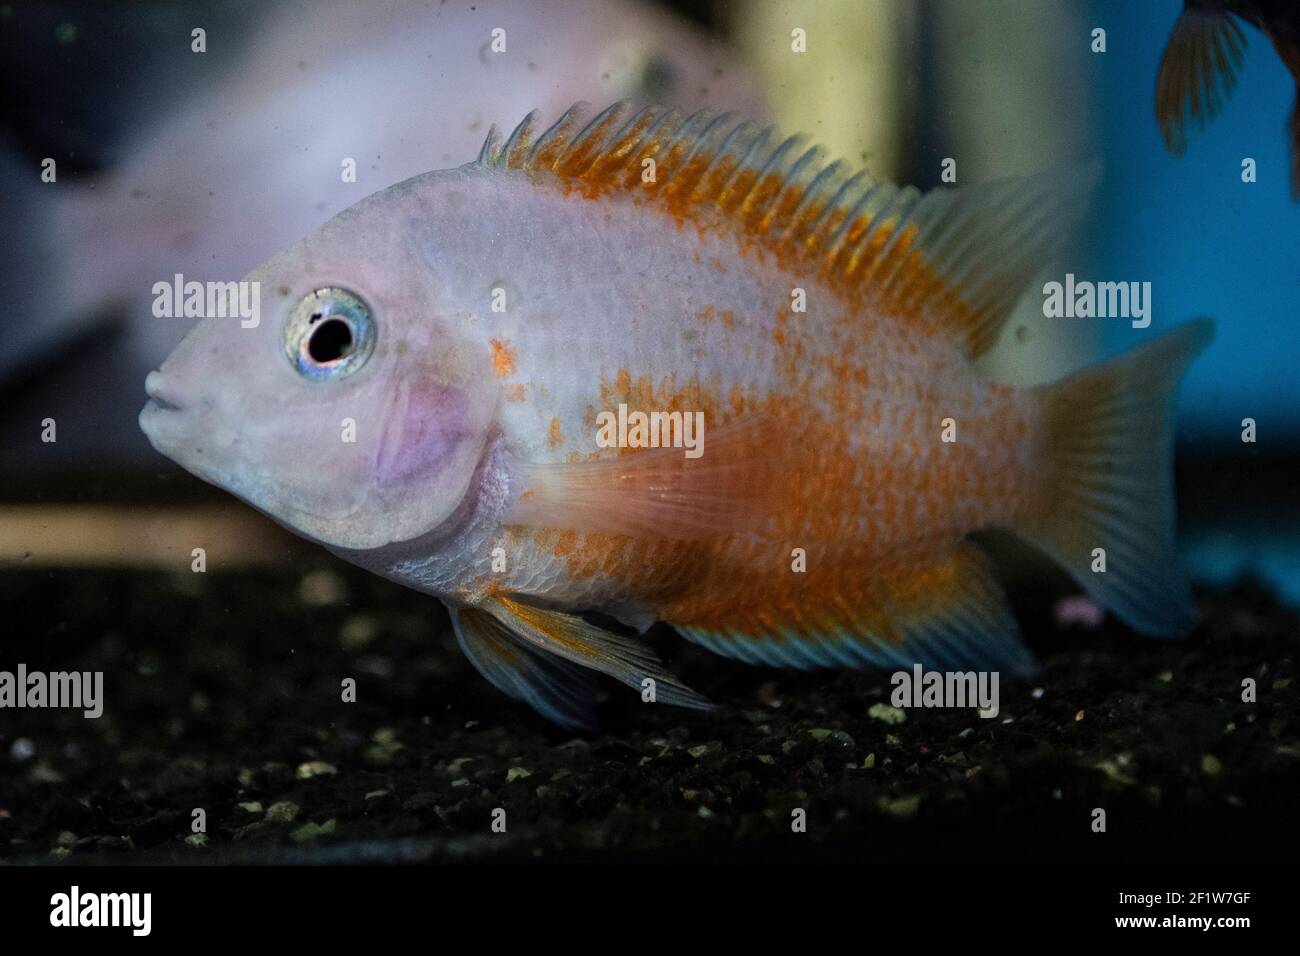 Red parrot aquarium fish in freshwater aquarium Stock Photo